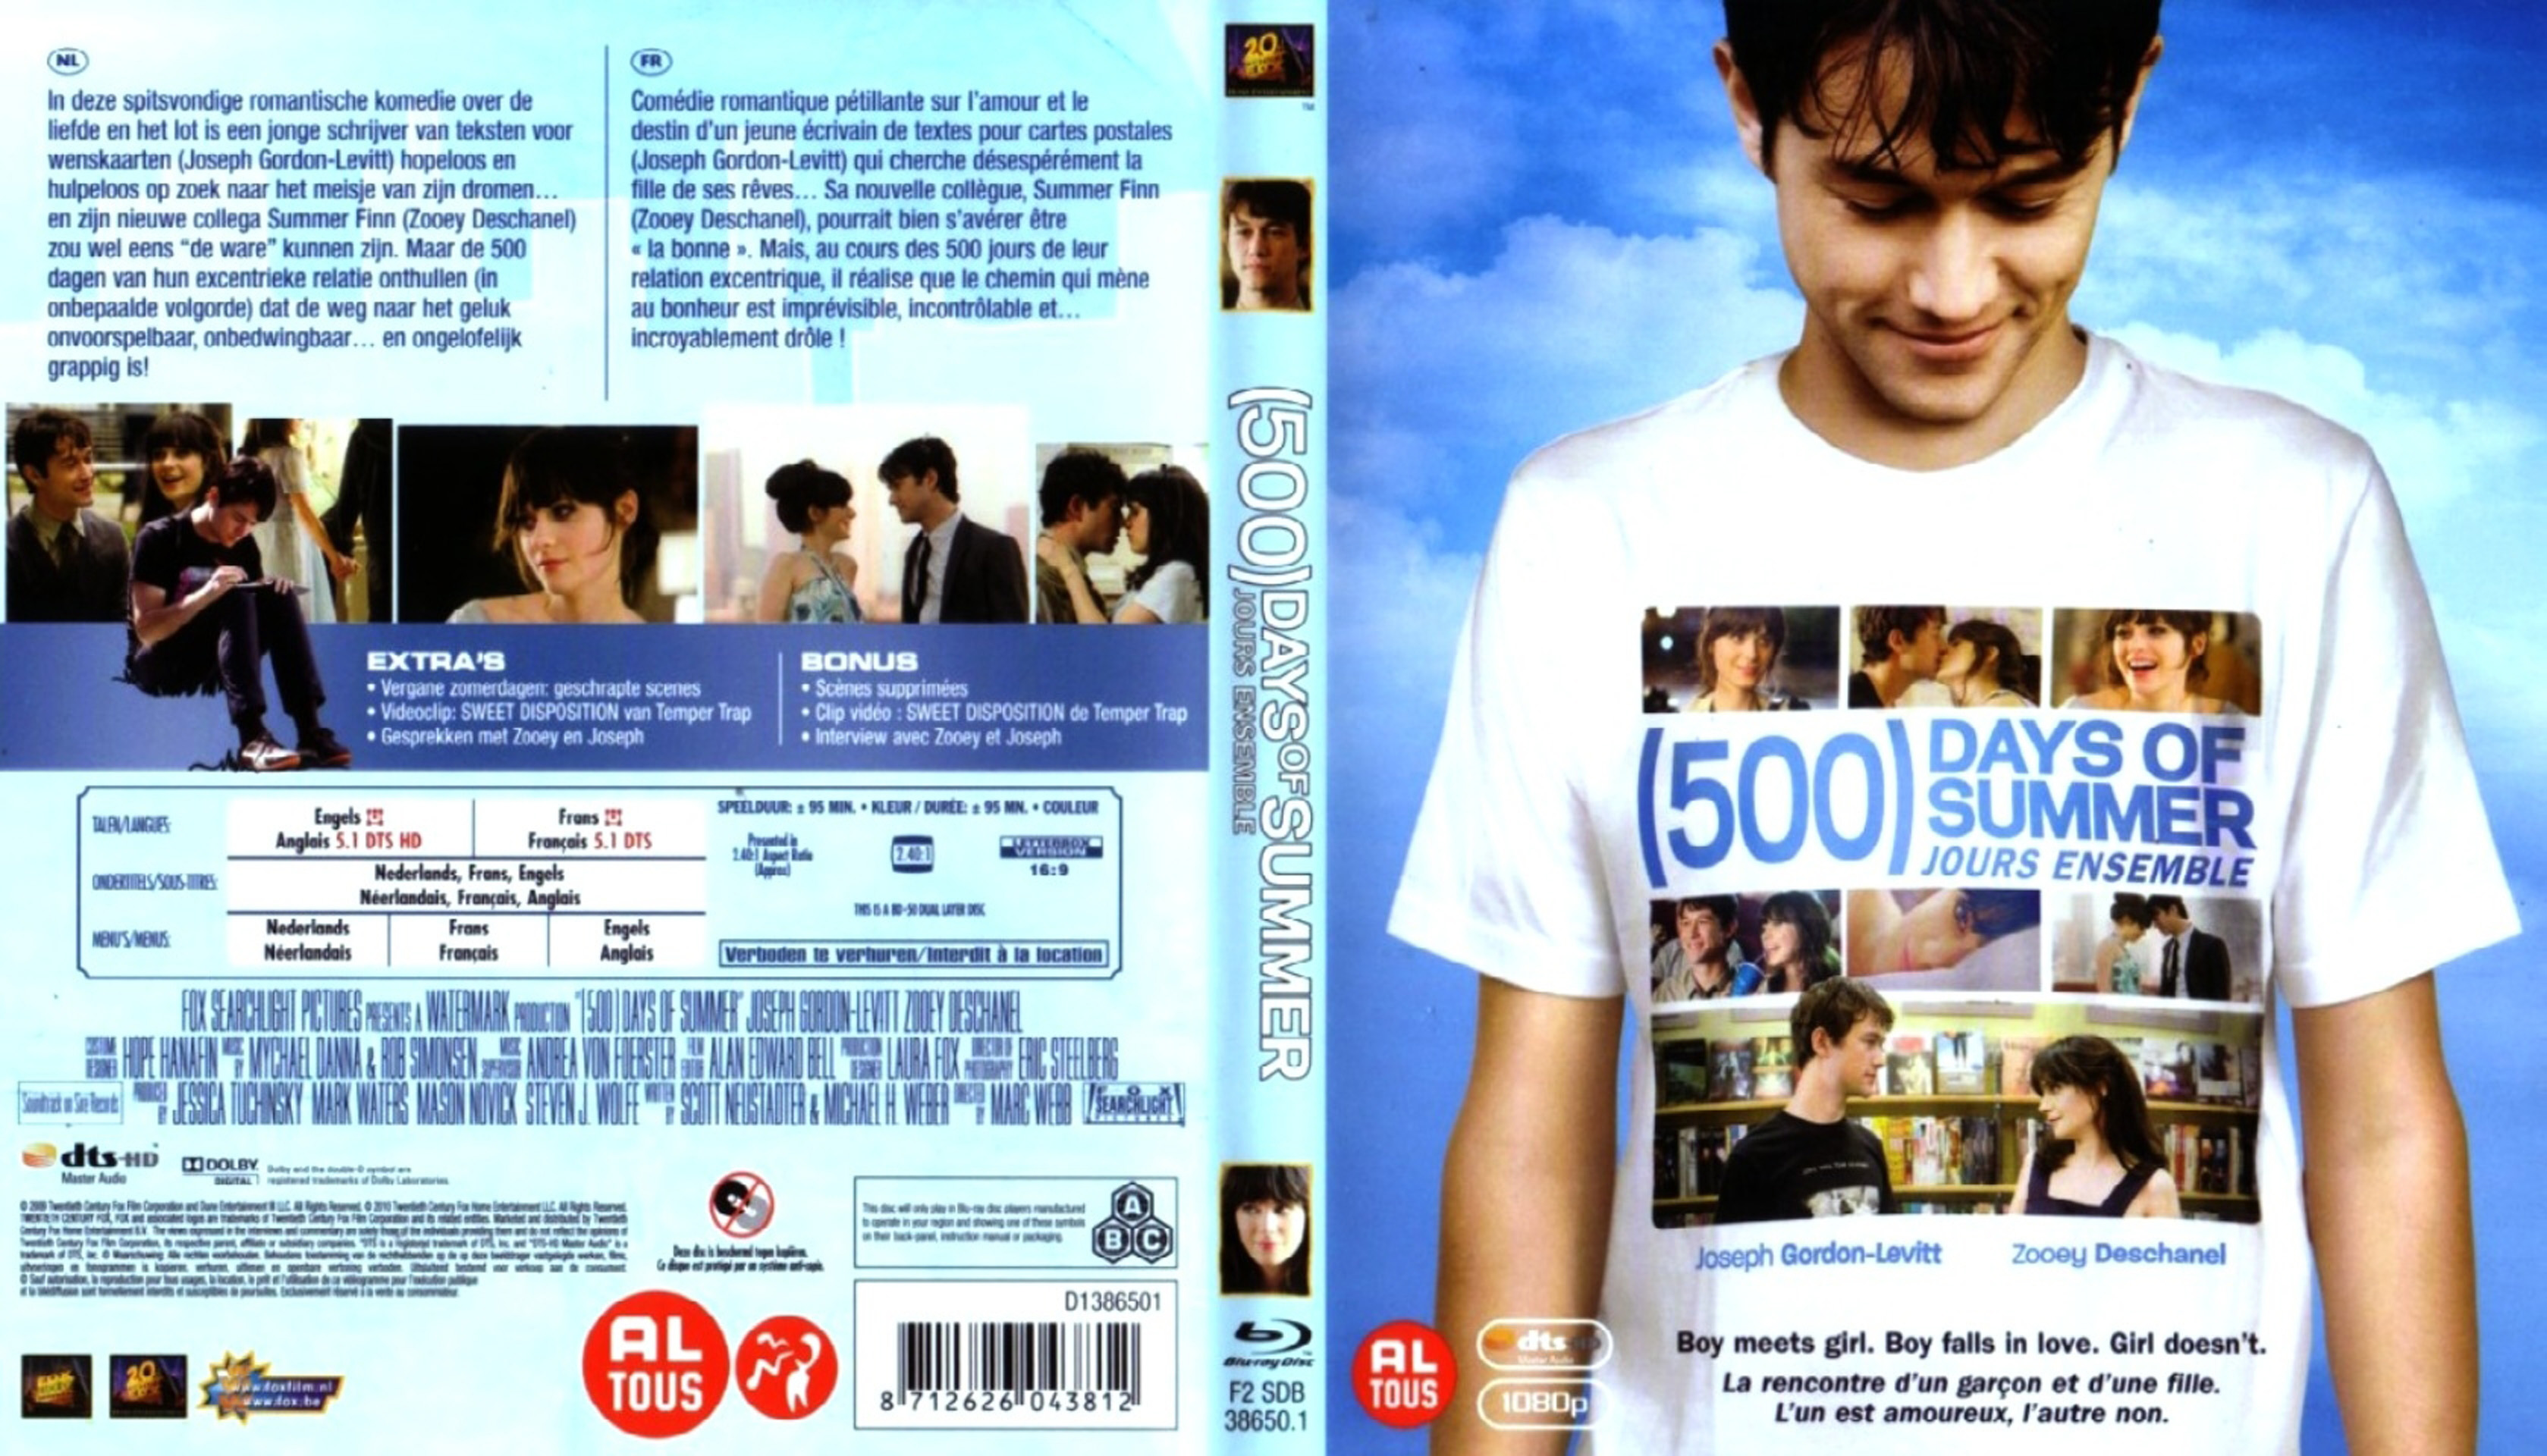 Jaquette DVD 500 jours ensembles (BLU-RAY)